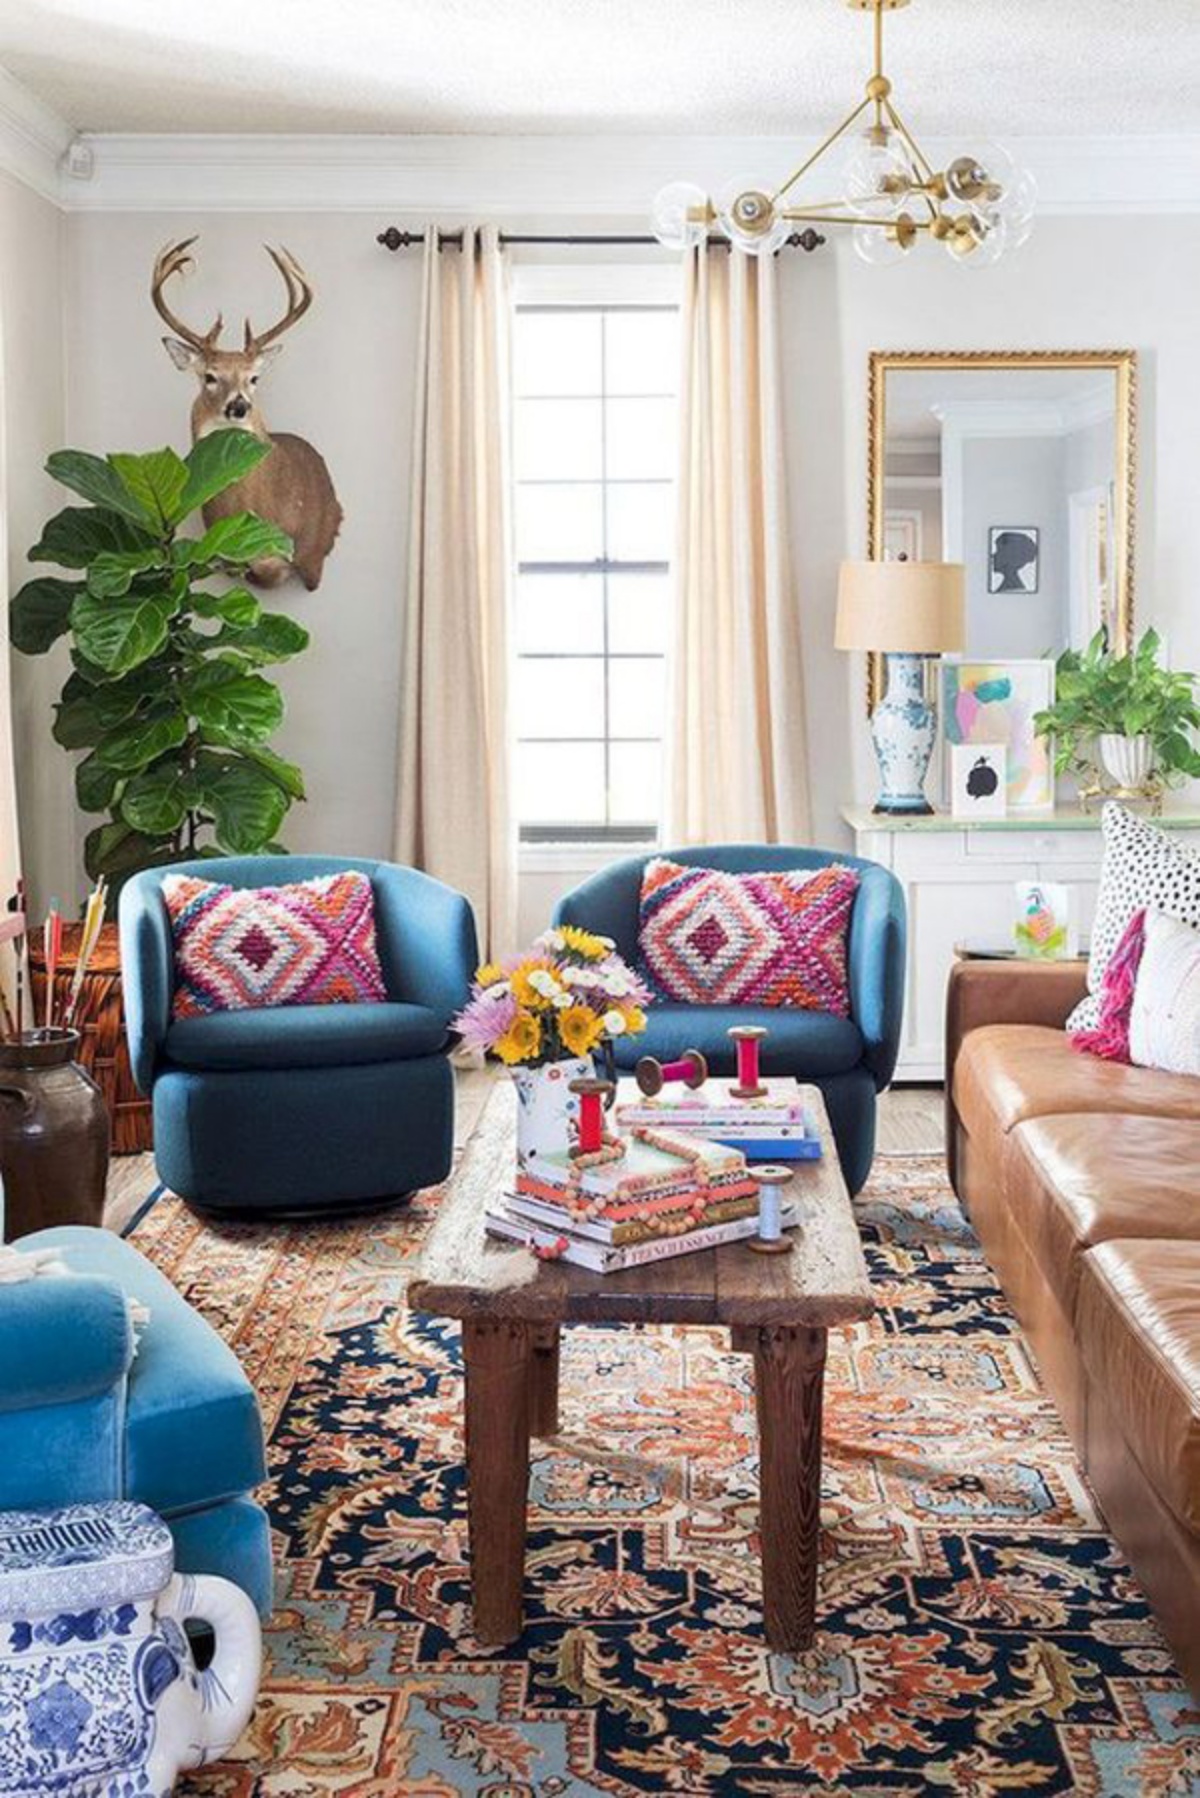 arredamento eclettico in soggiorno divano in pelle marrone cuscini colorati